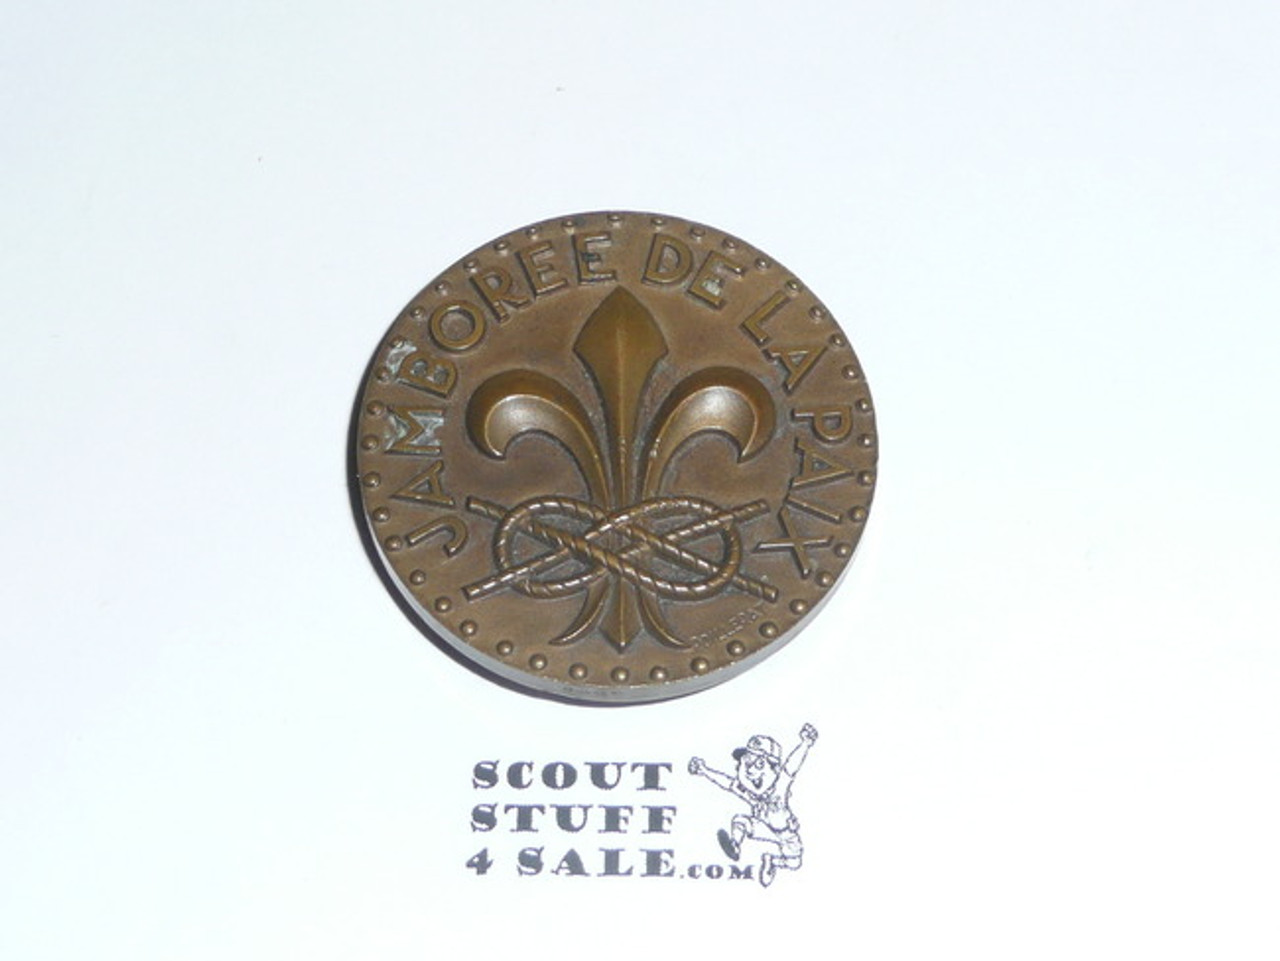 1947 Boy Scout World Jamboree Large Souvenir Coin